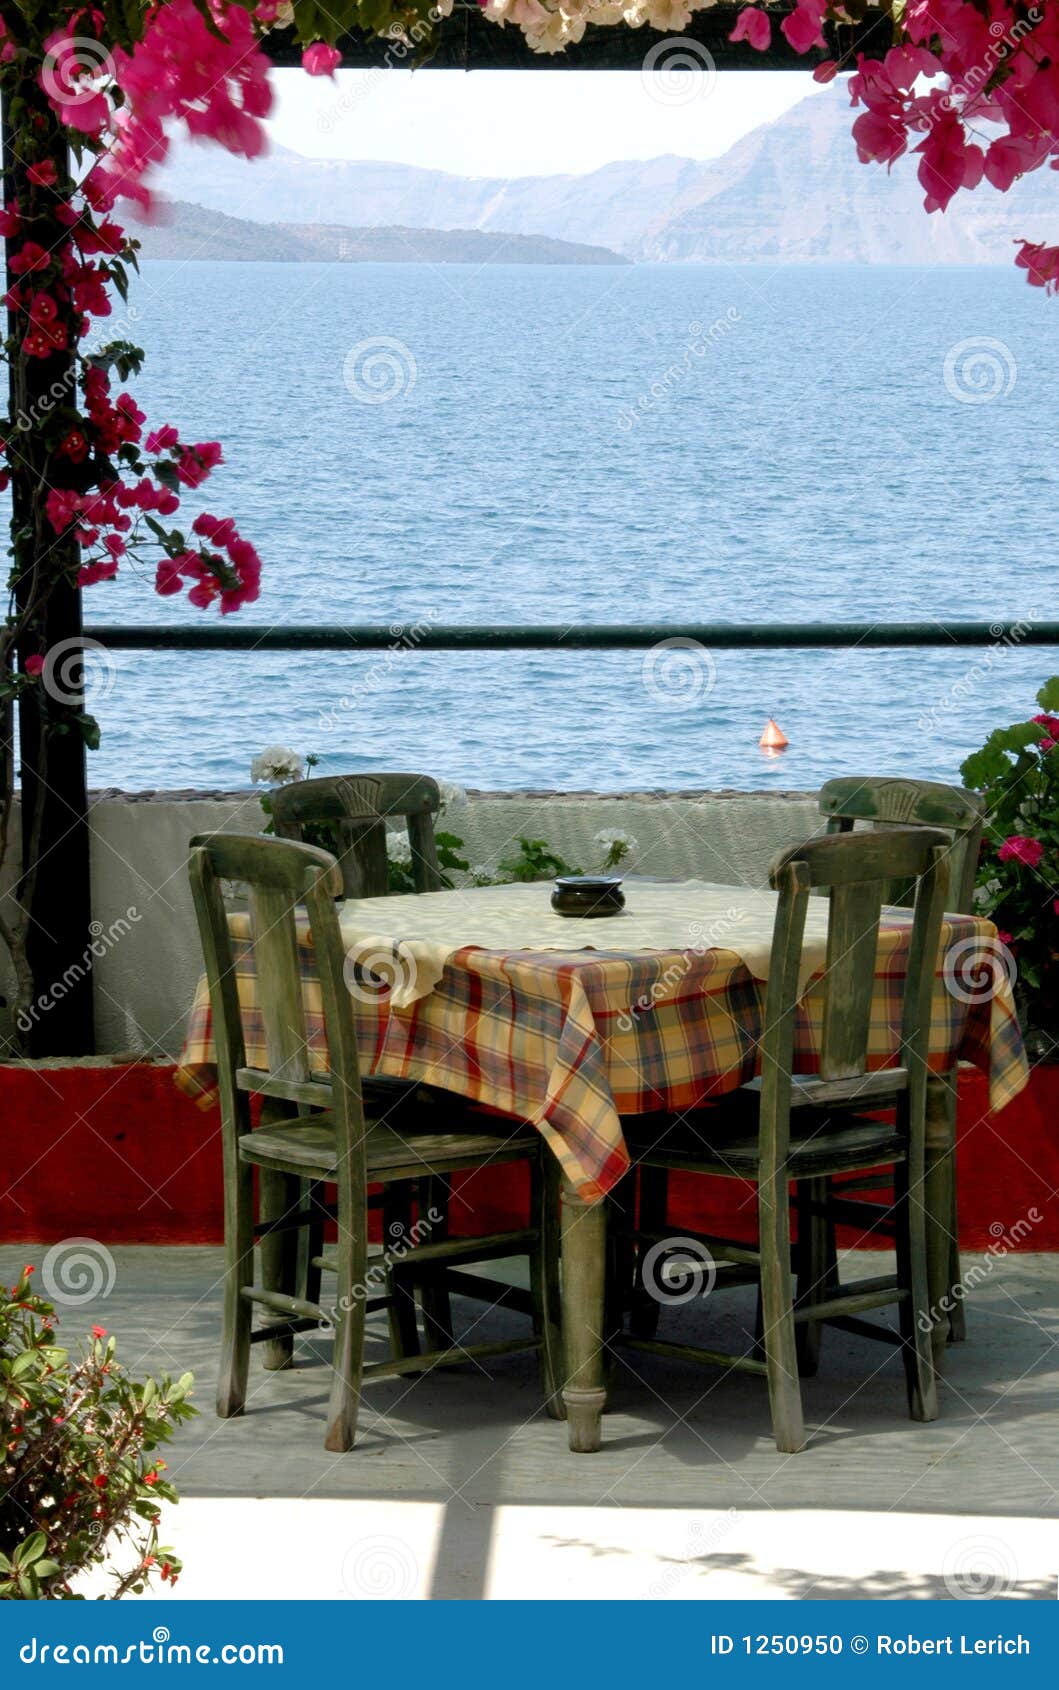 greek island taverna scene santorini